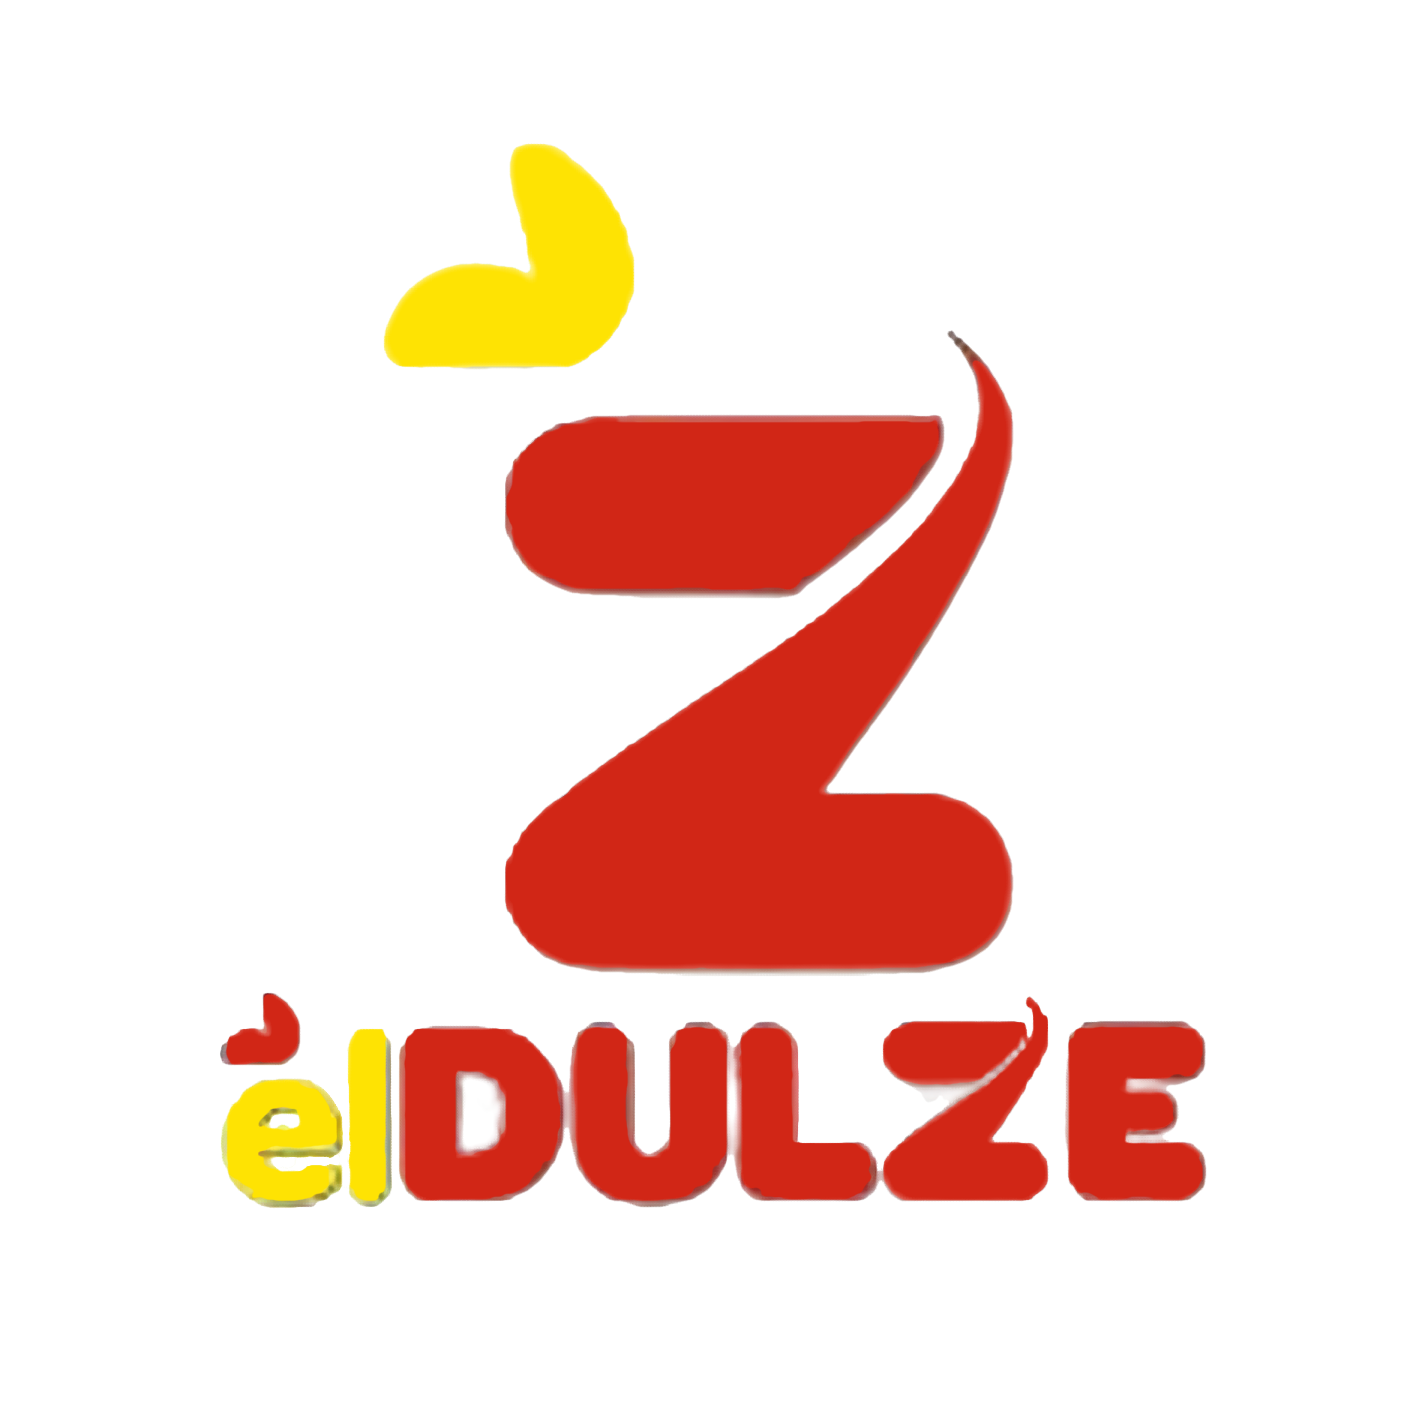 ElDulze